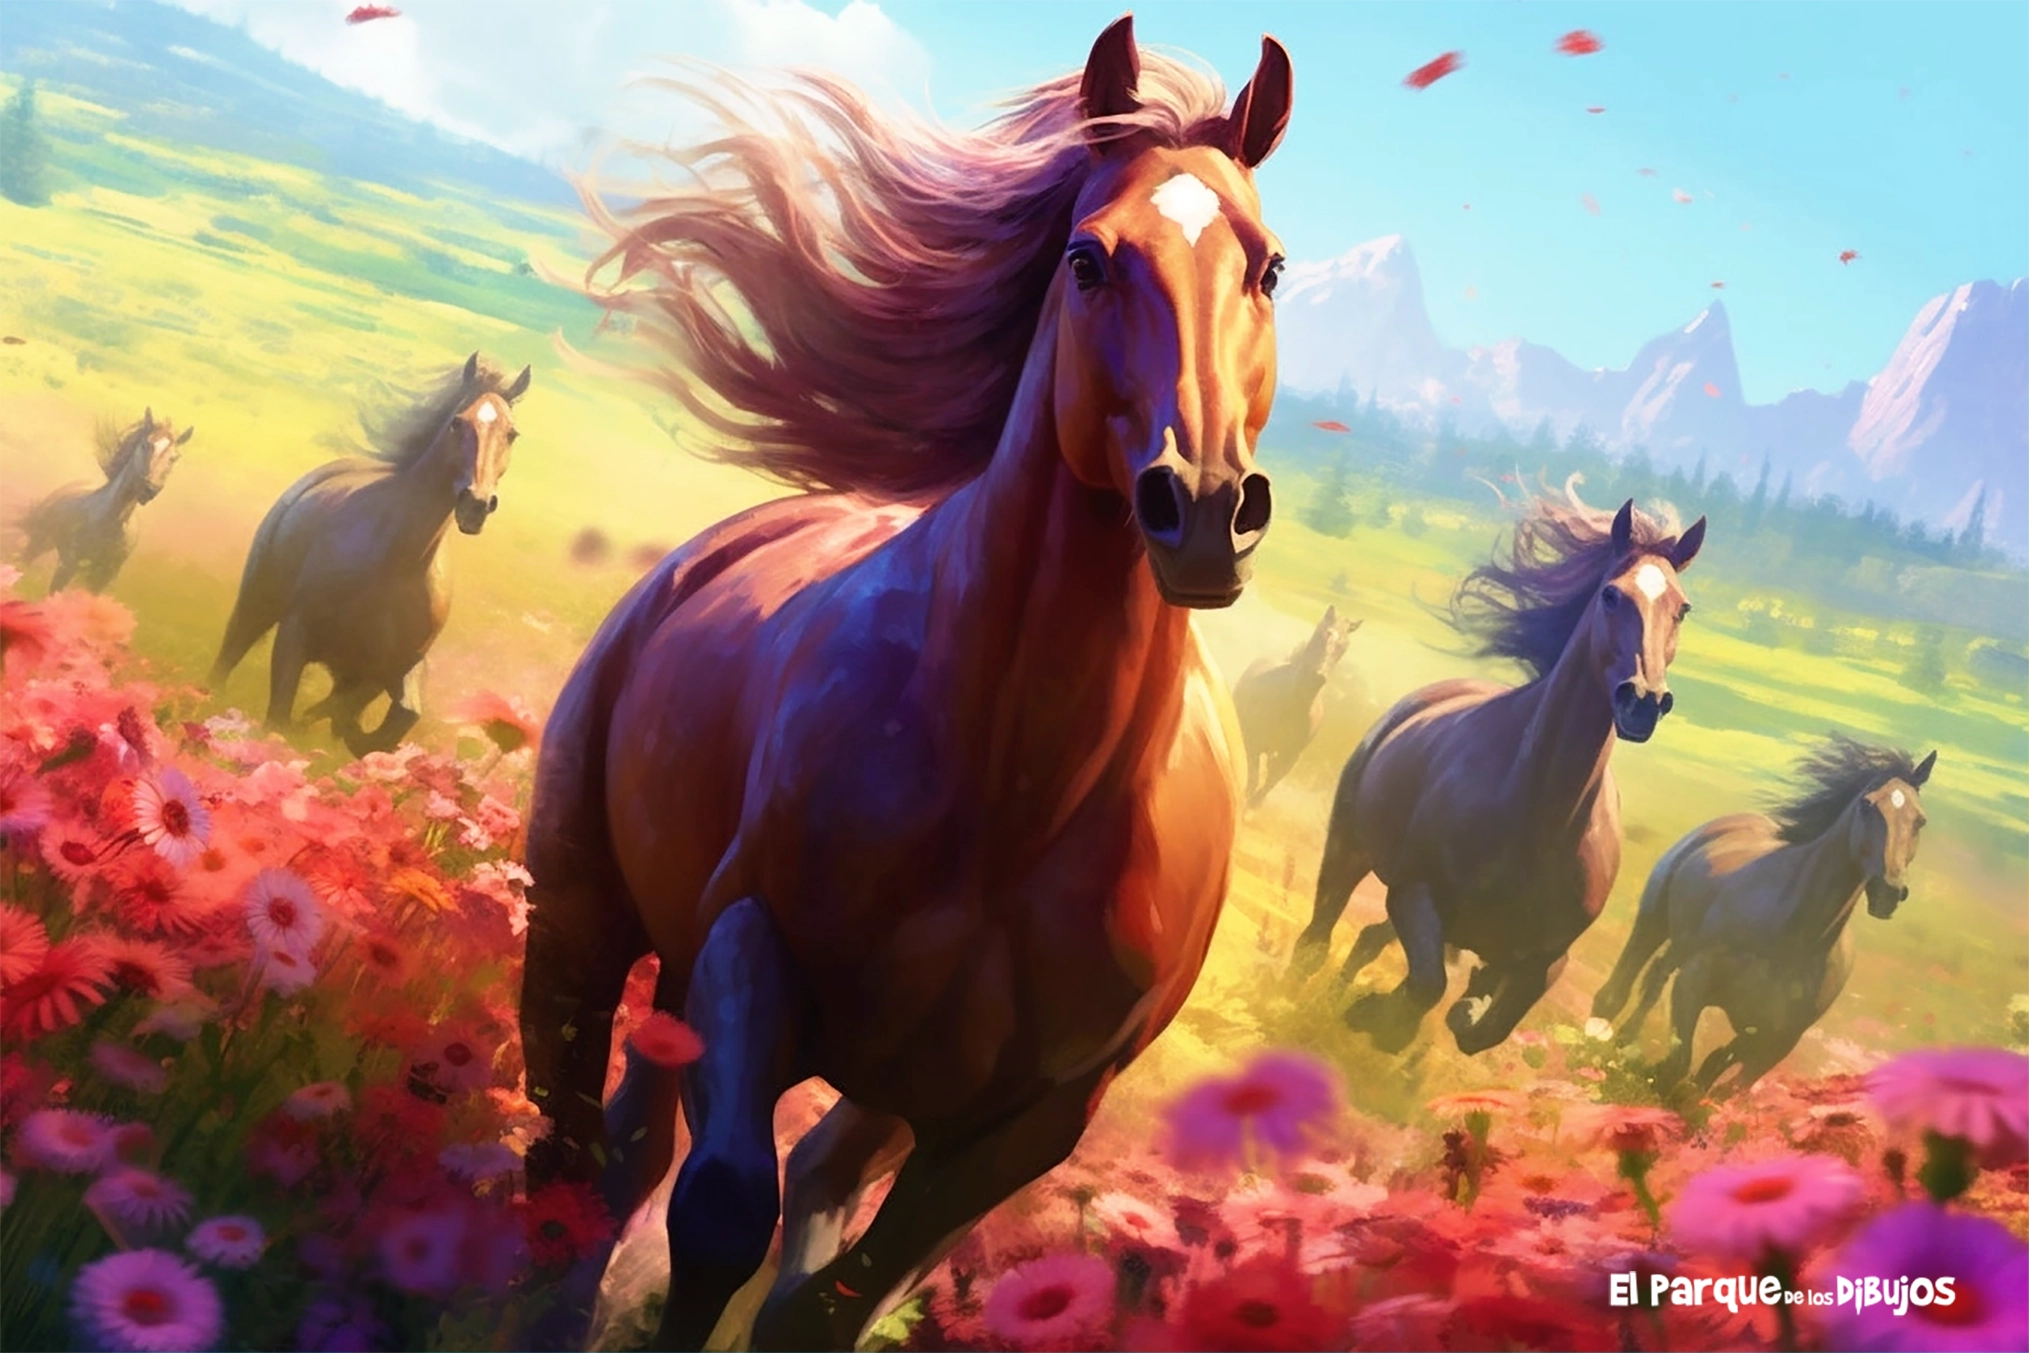 Imagen nº 2, ilustración de unos caballos trotando por una pradera